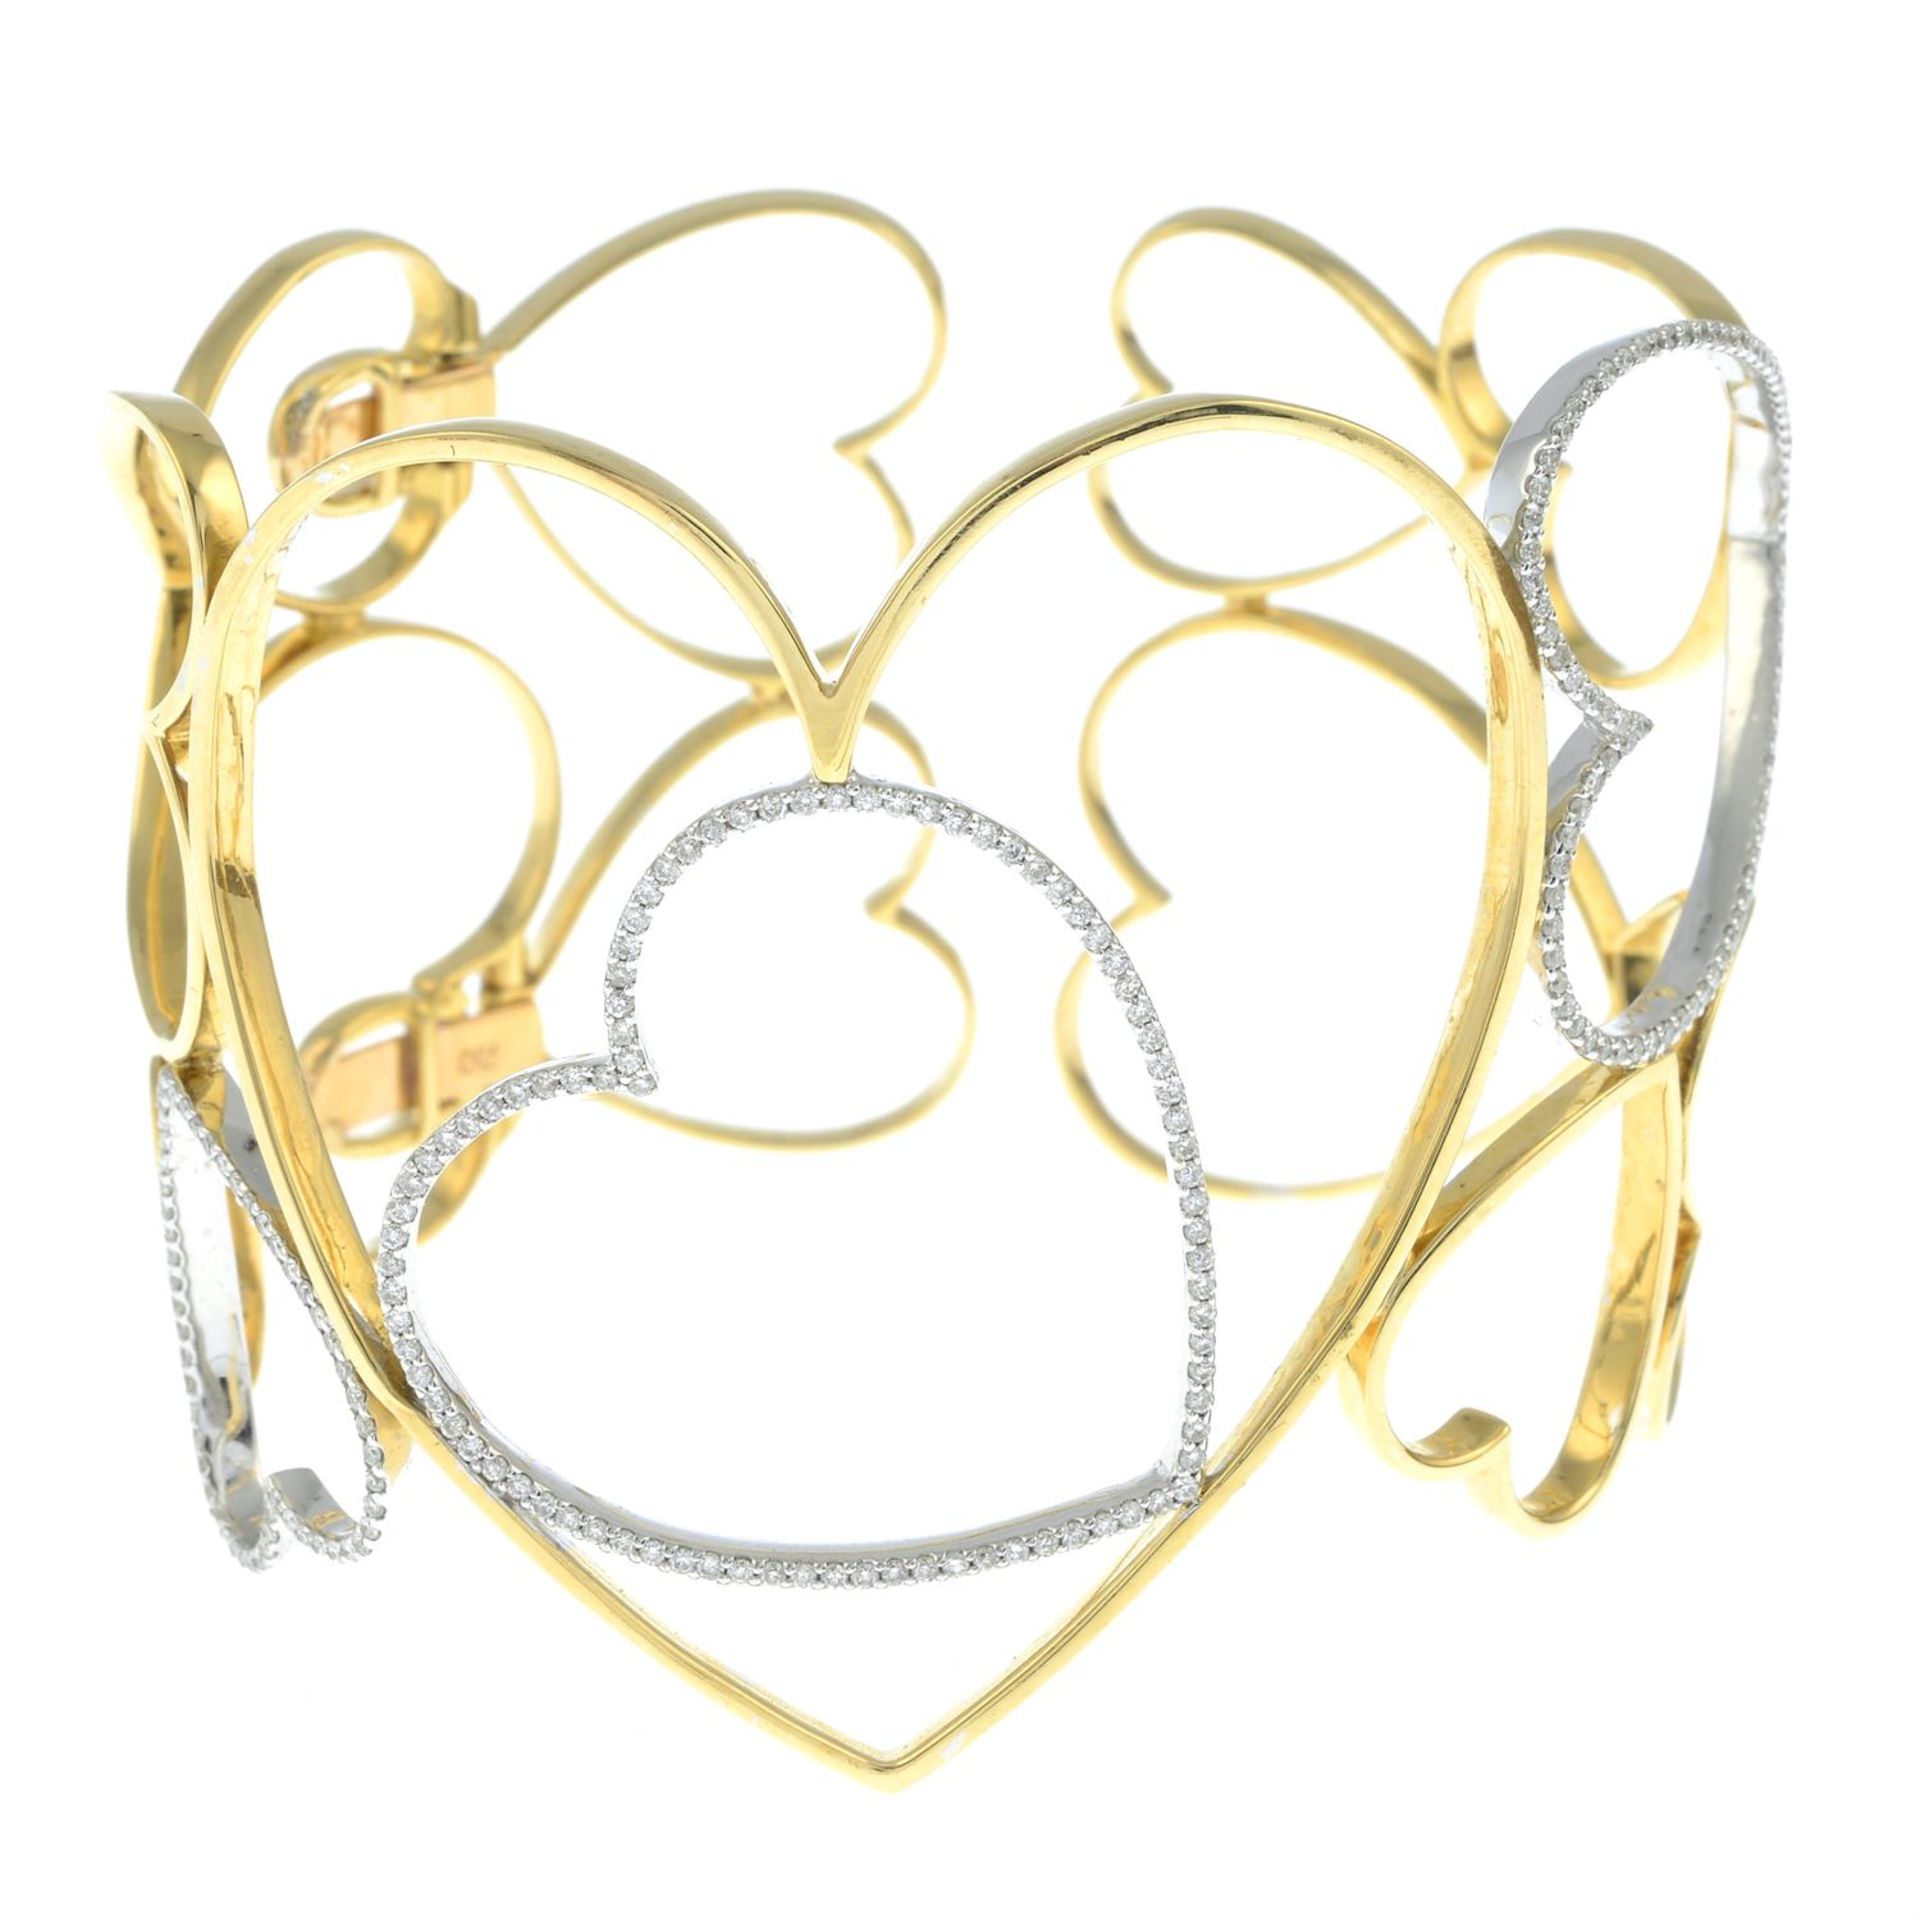 An openwork heart motif bangle, with diamond highlights. - Bild 2 aus 4